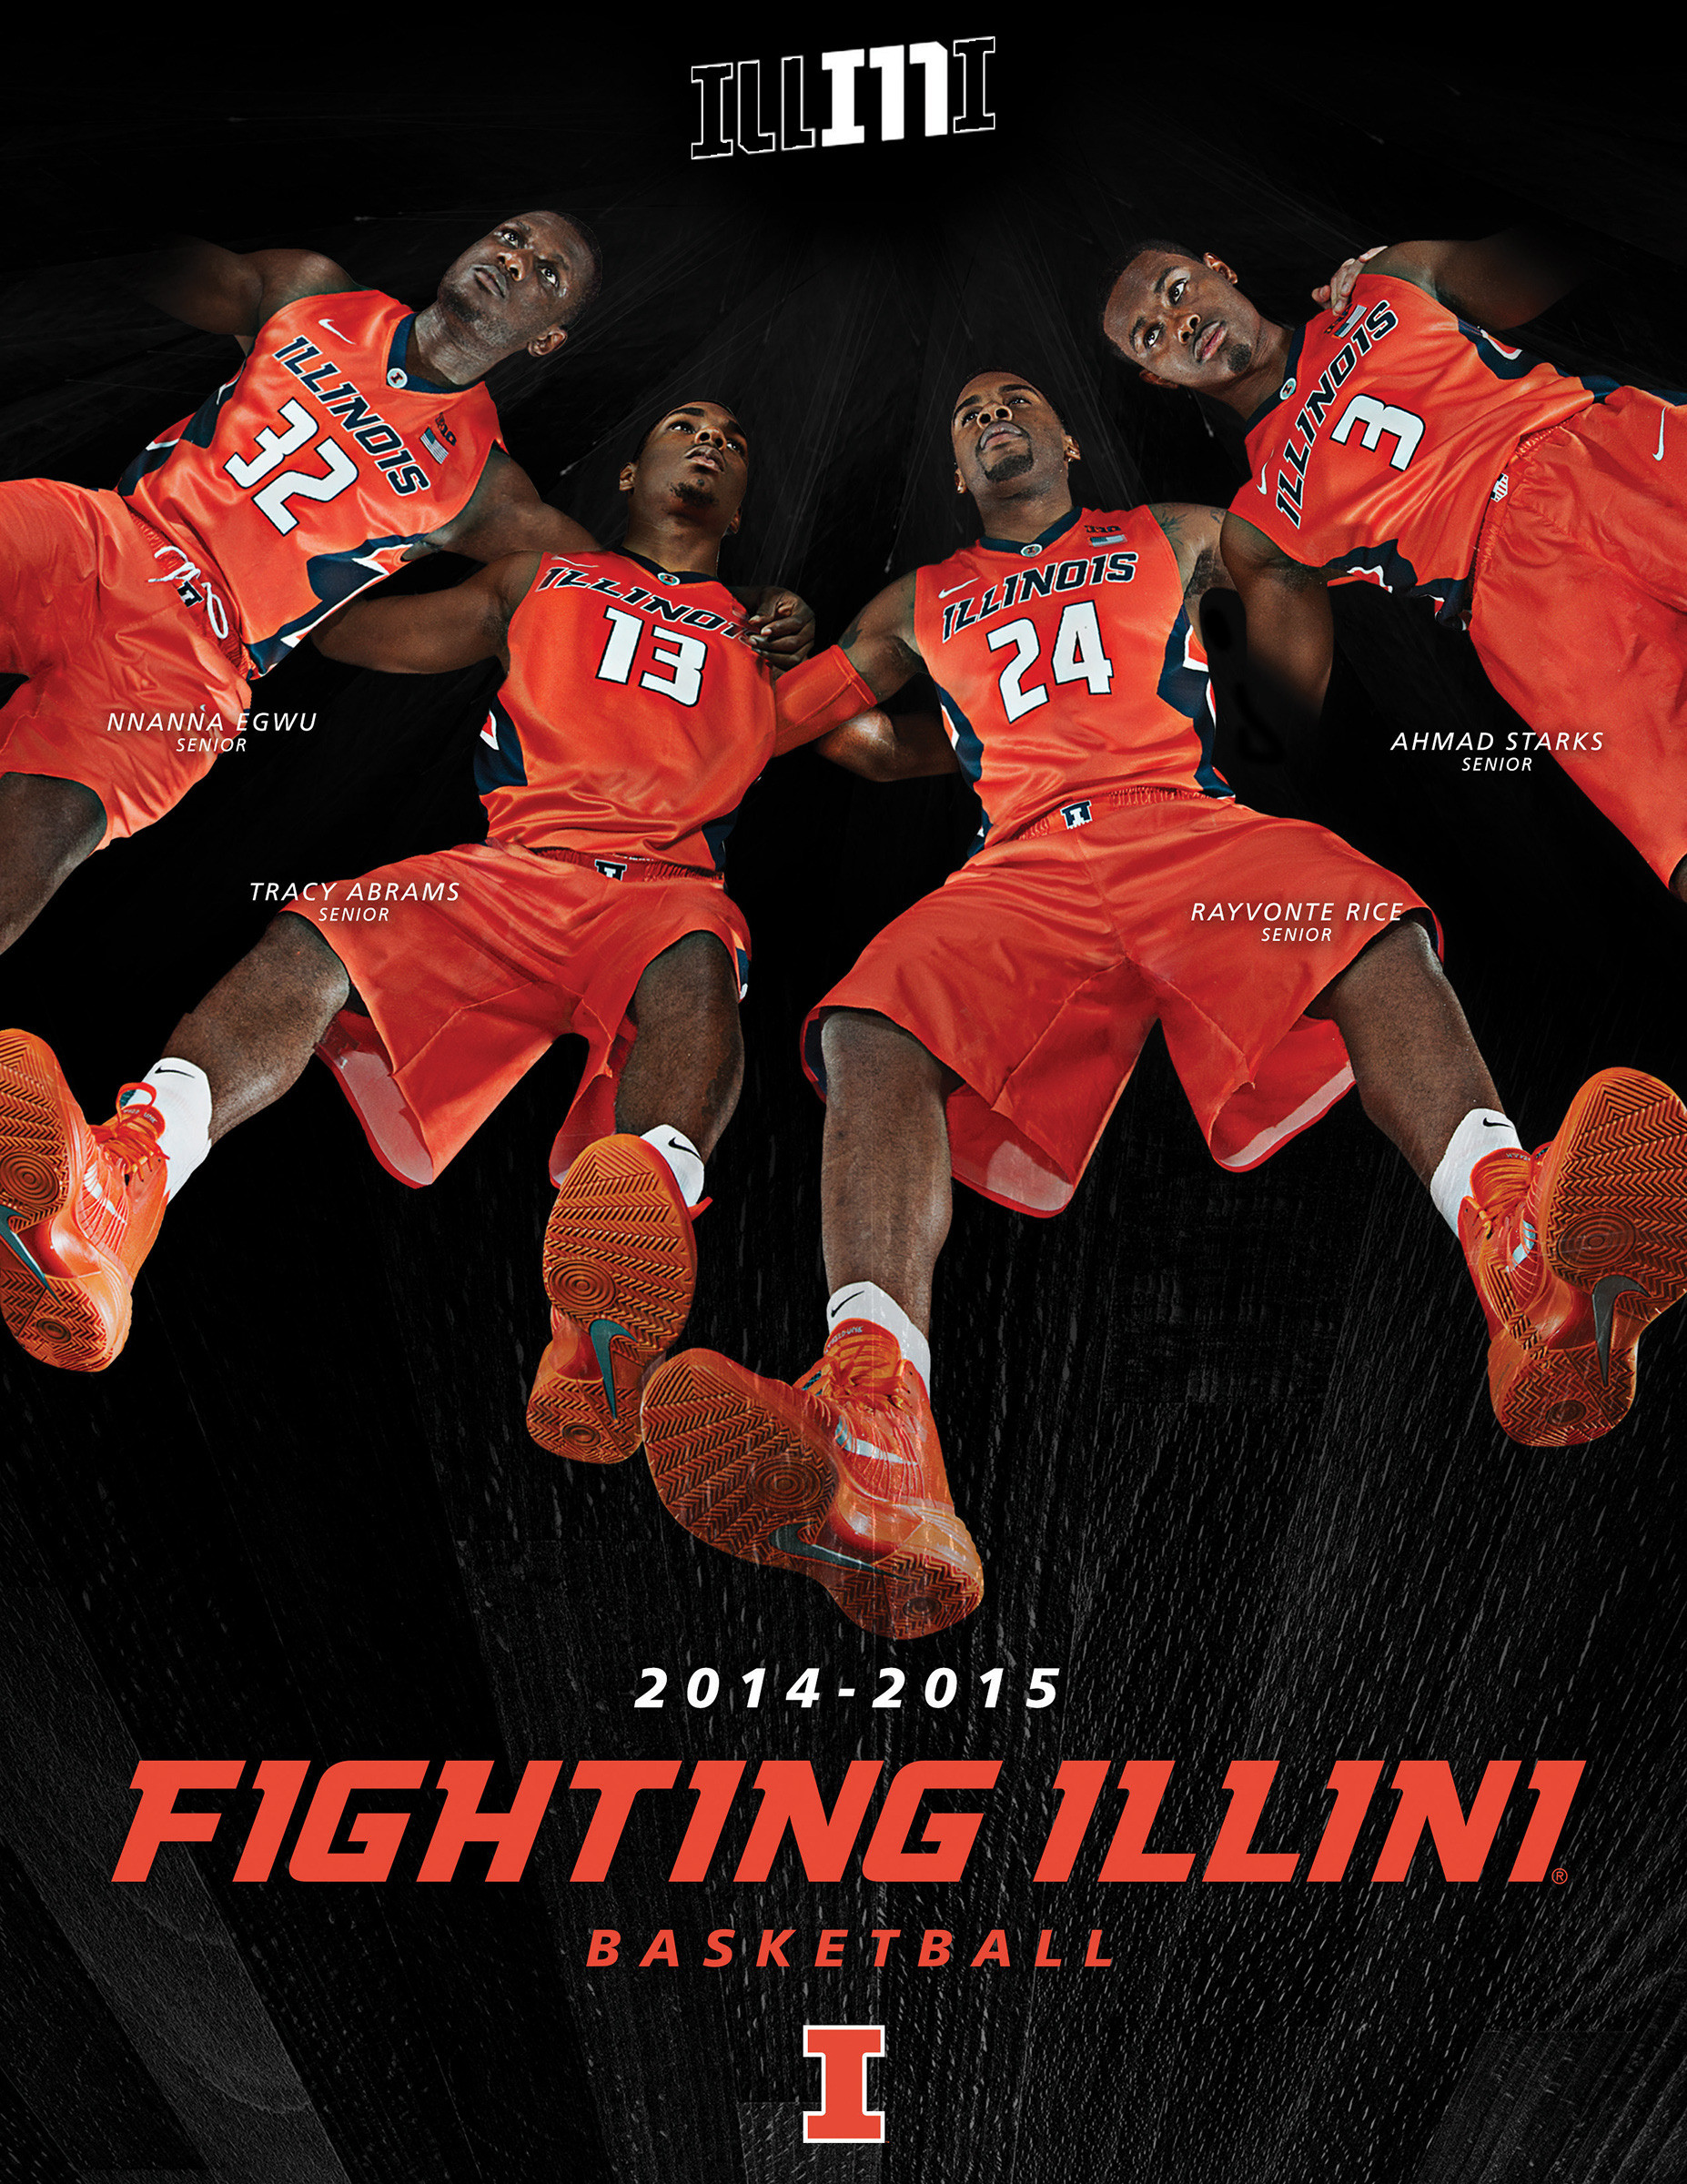 Illinois Fighting Illini Wallpaper Image